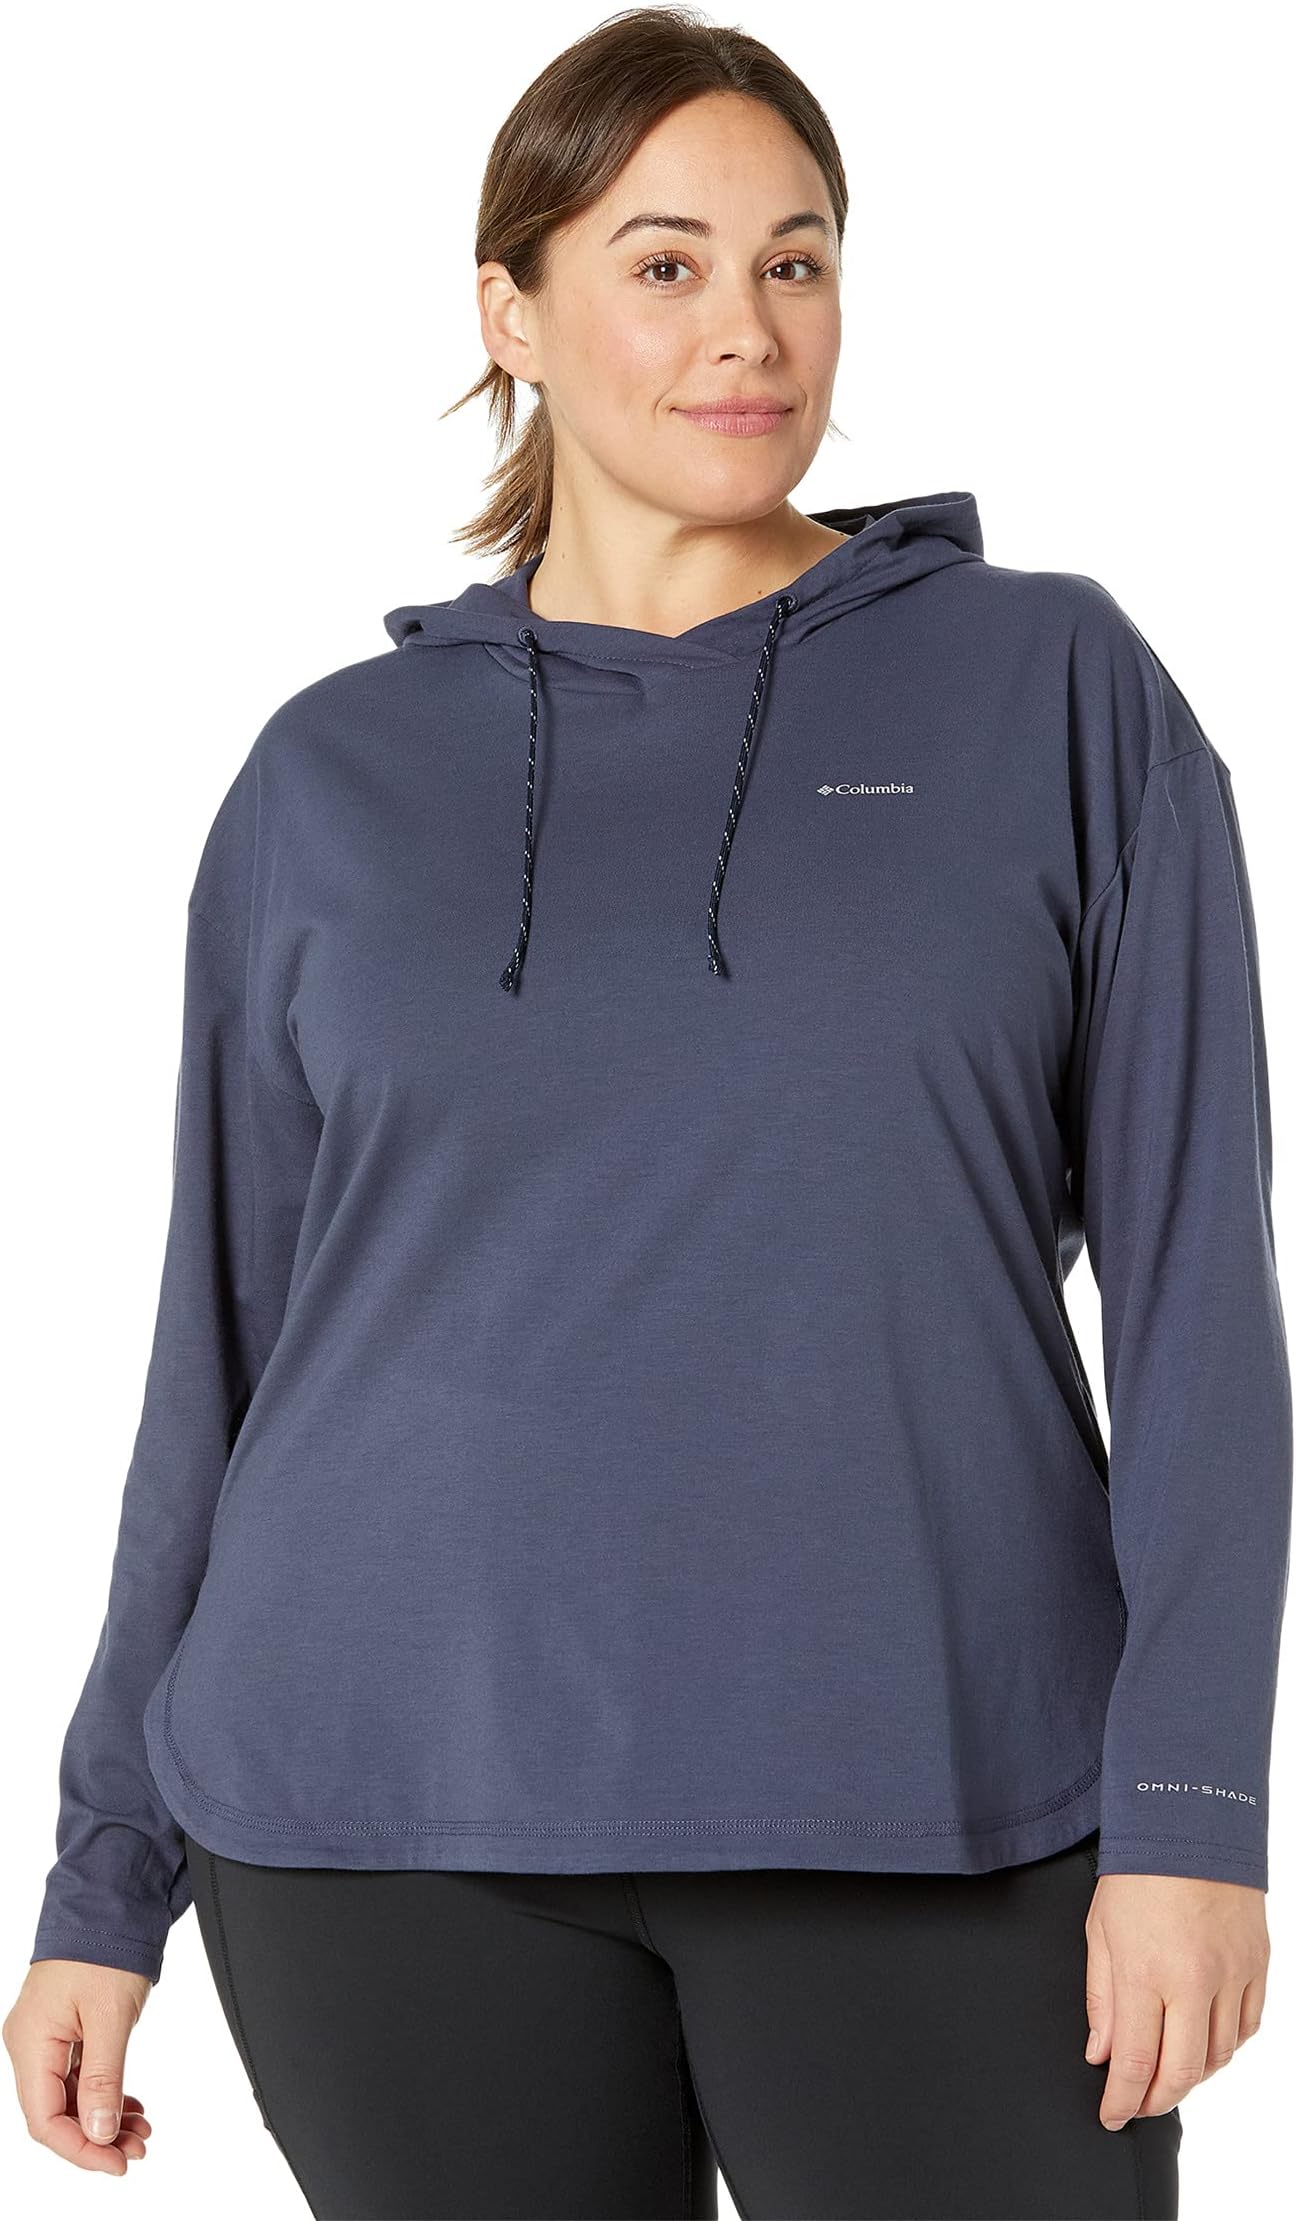 Пуловер с капюшоном Sun Trek больших размеров Columbia, цвет Nocturnal